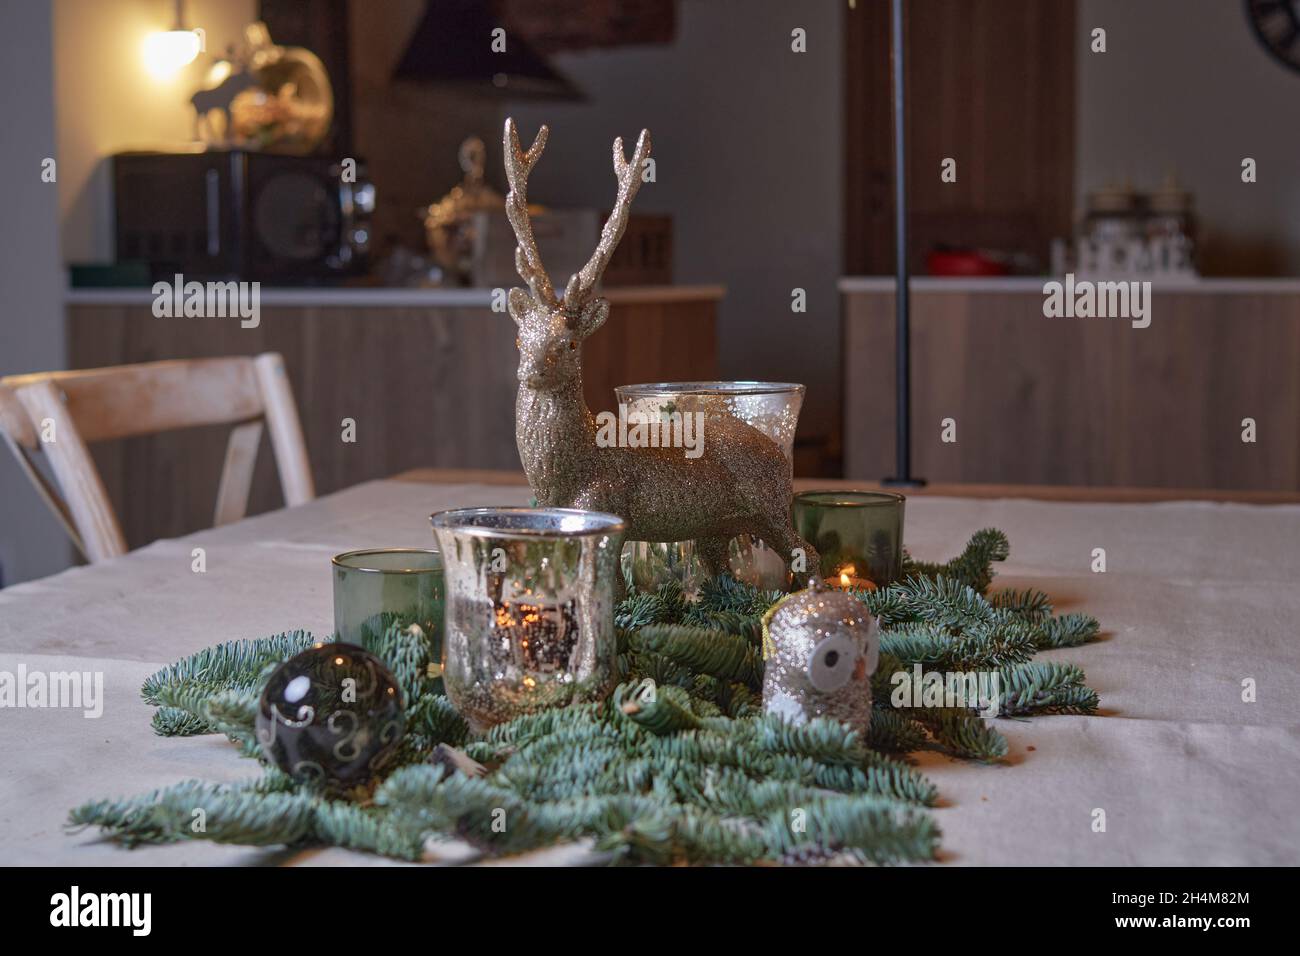 Pièce maîtresse de Noël de style rustique préparée pour un dîner de Noël en famille avec un renne et des bougies allumées sur une table en bois. Concept noël Banque D'Images